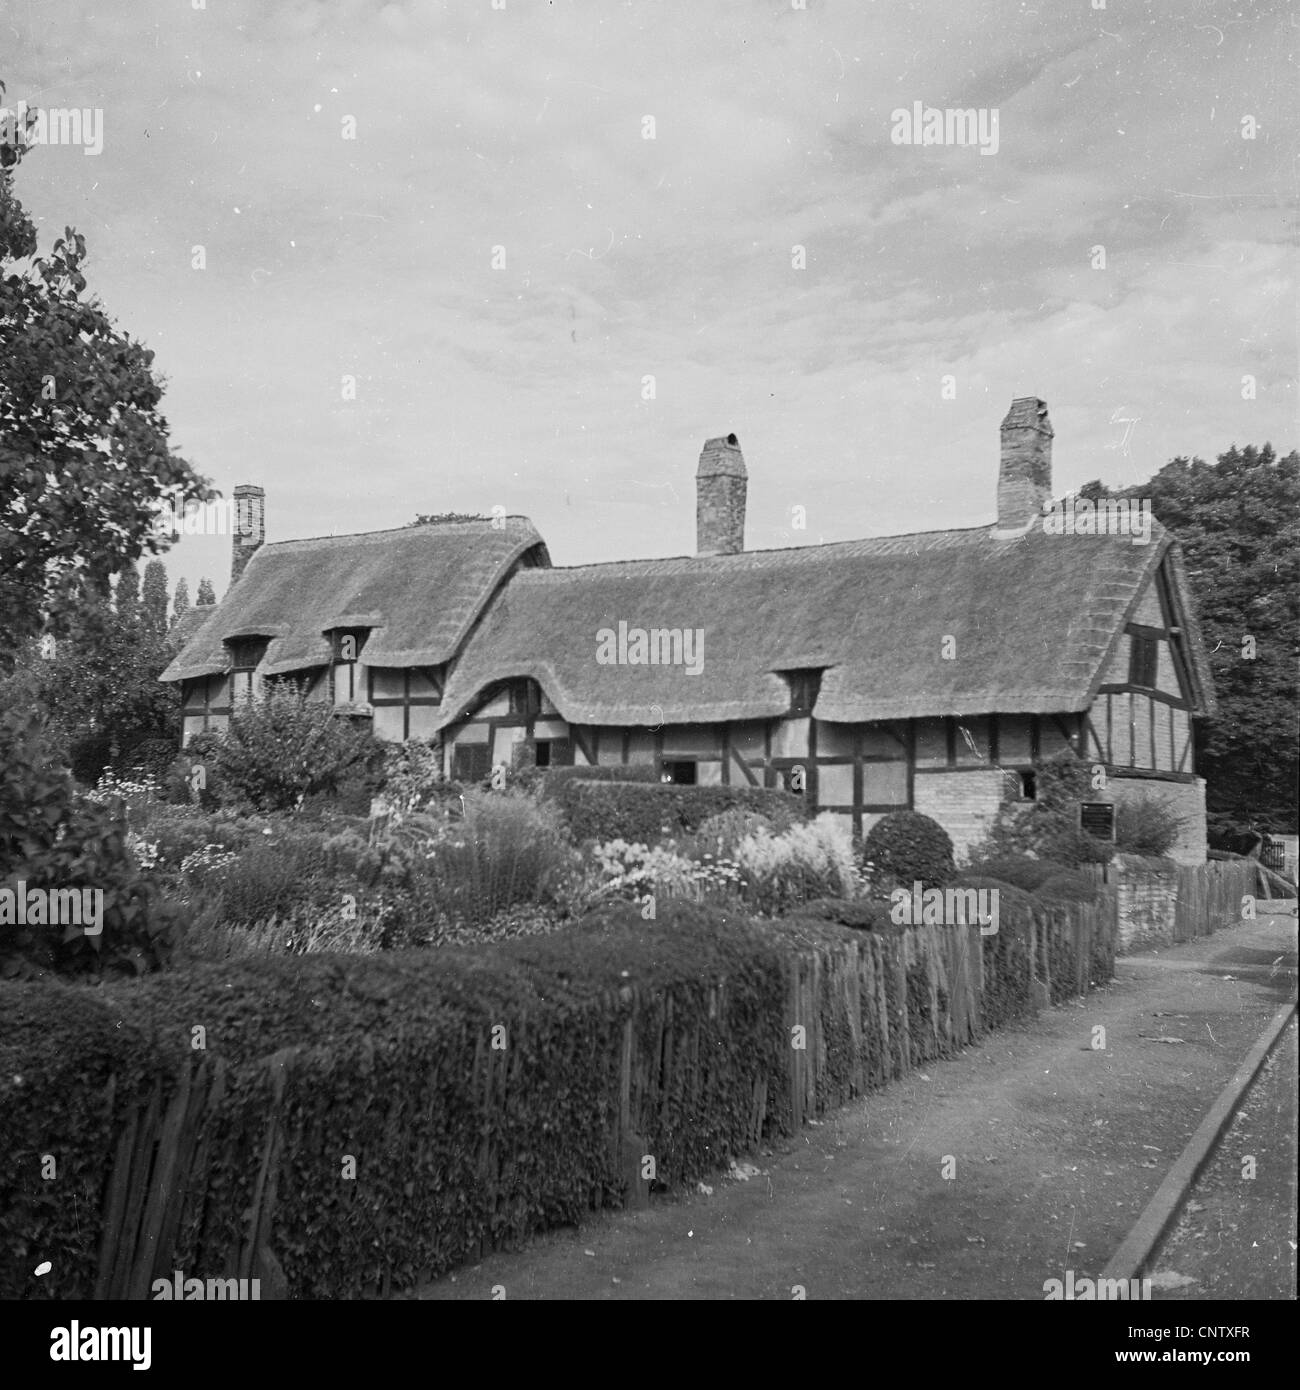 Historische Aufnahme aus den 1950er Jahren von Stratford-upon-Avon, dem Geburtsort des englischen Dramatikers William Shakespeare. Stockfoto